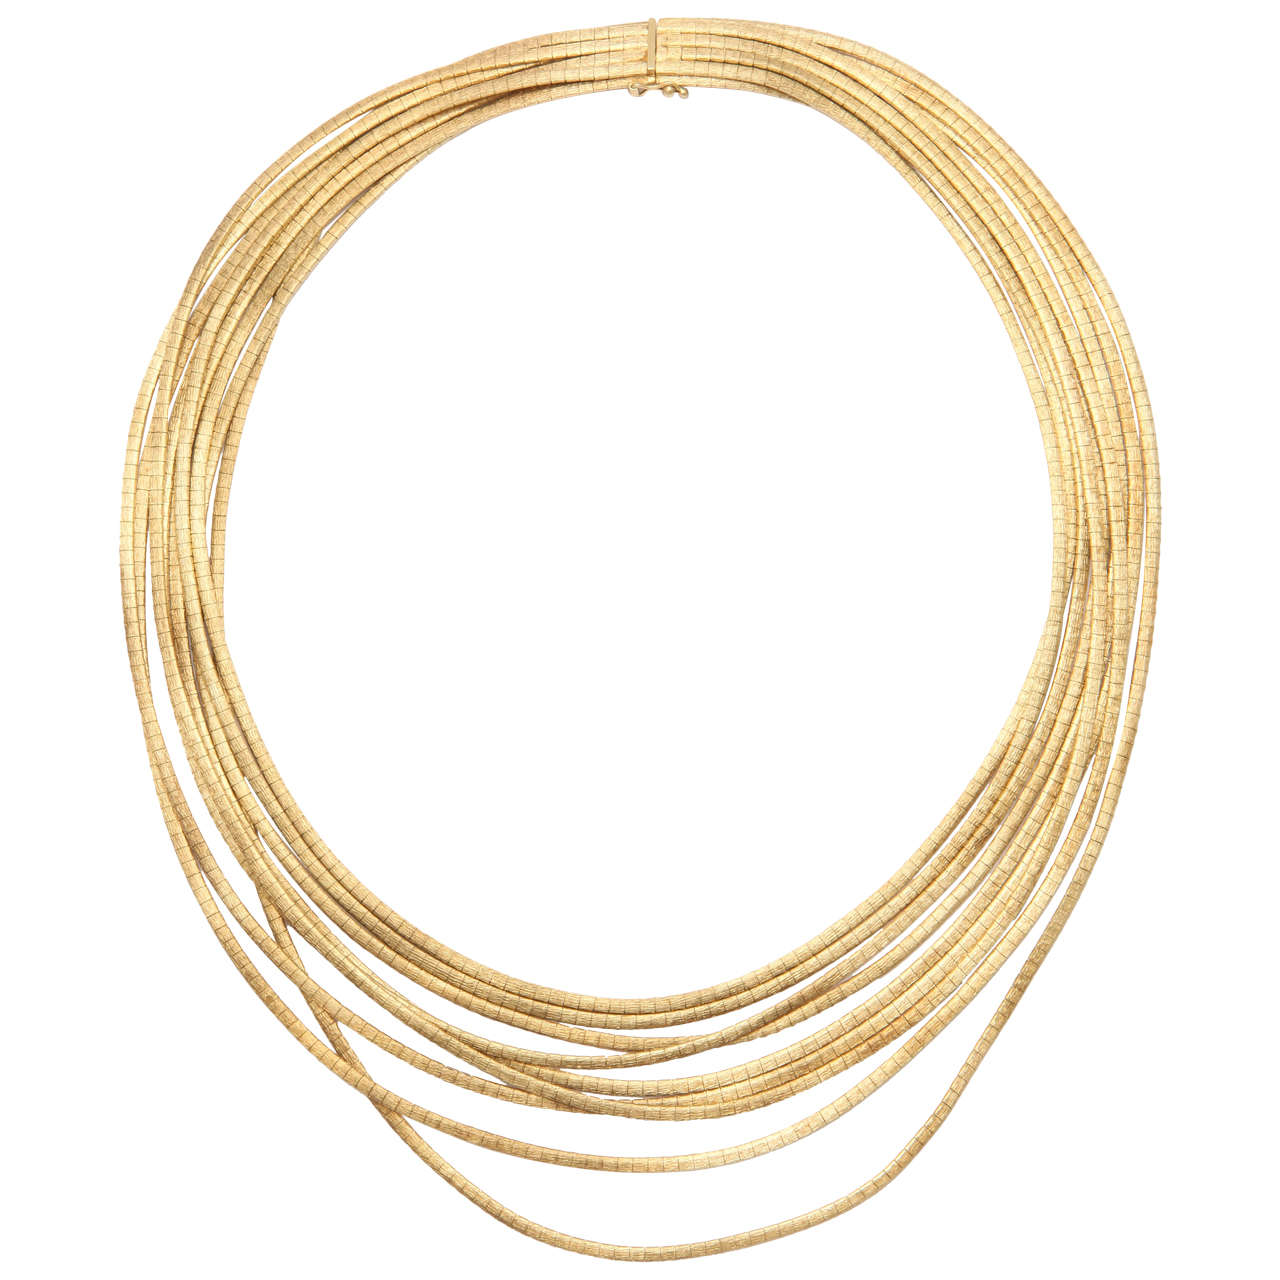 Italian 8 Strand Gold Spaghetti Necklace